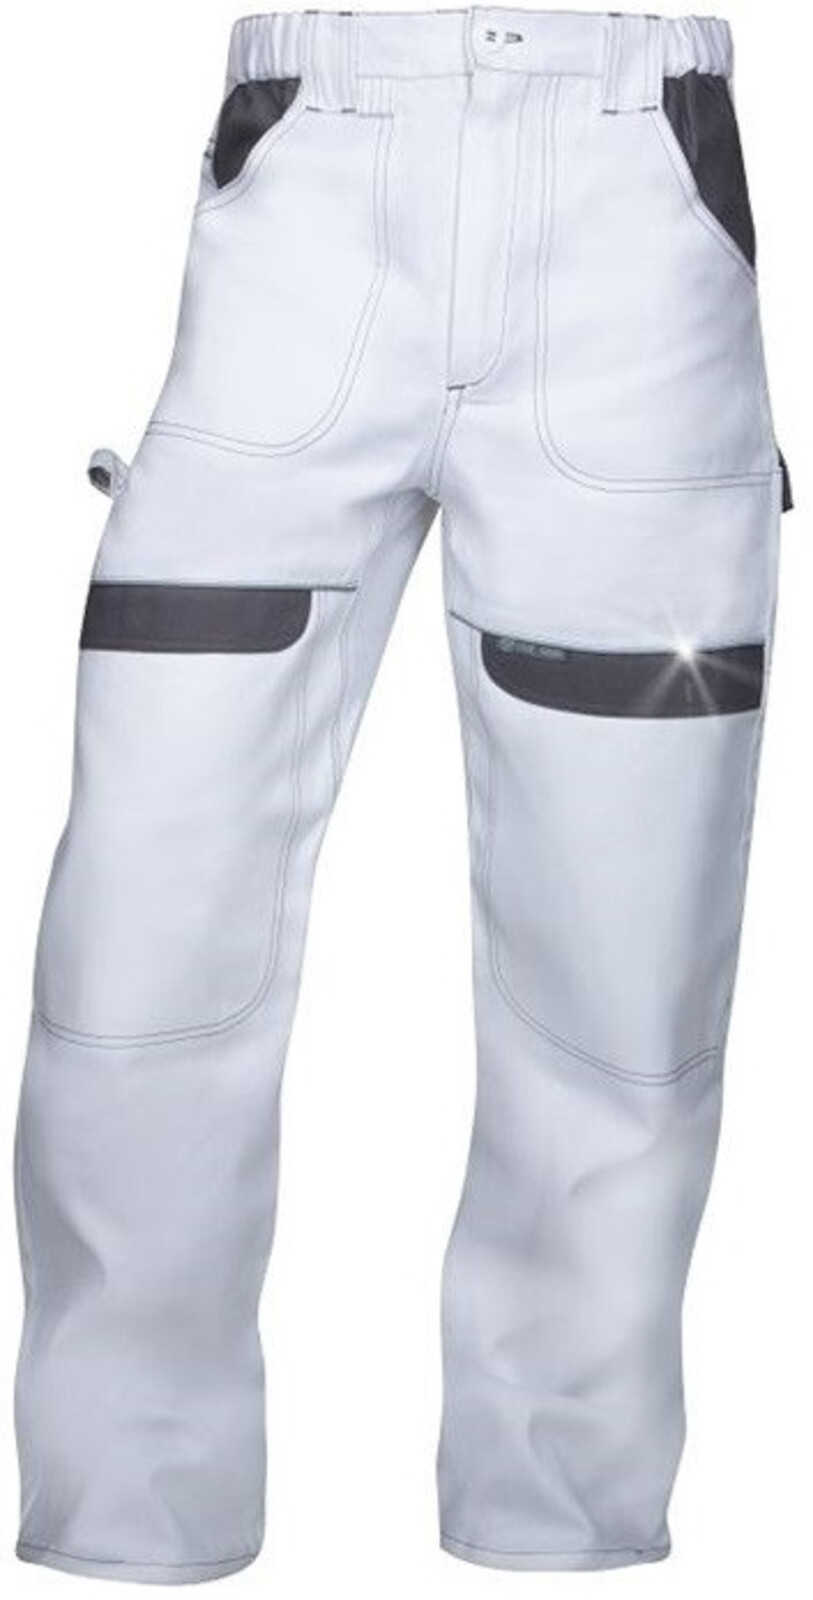 Pánske montérkové nohavice do pása Ardon Cool Trend - veľkosť: 48, farba: biela/sivá